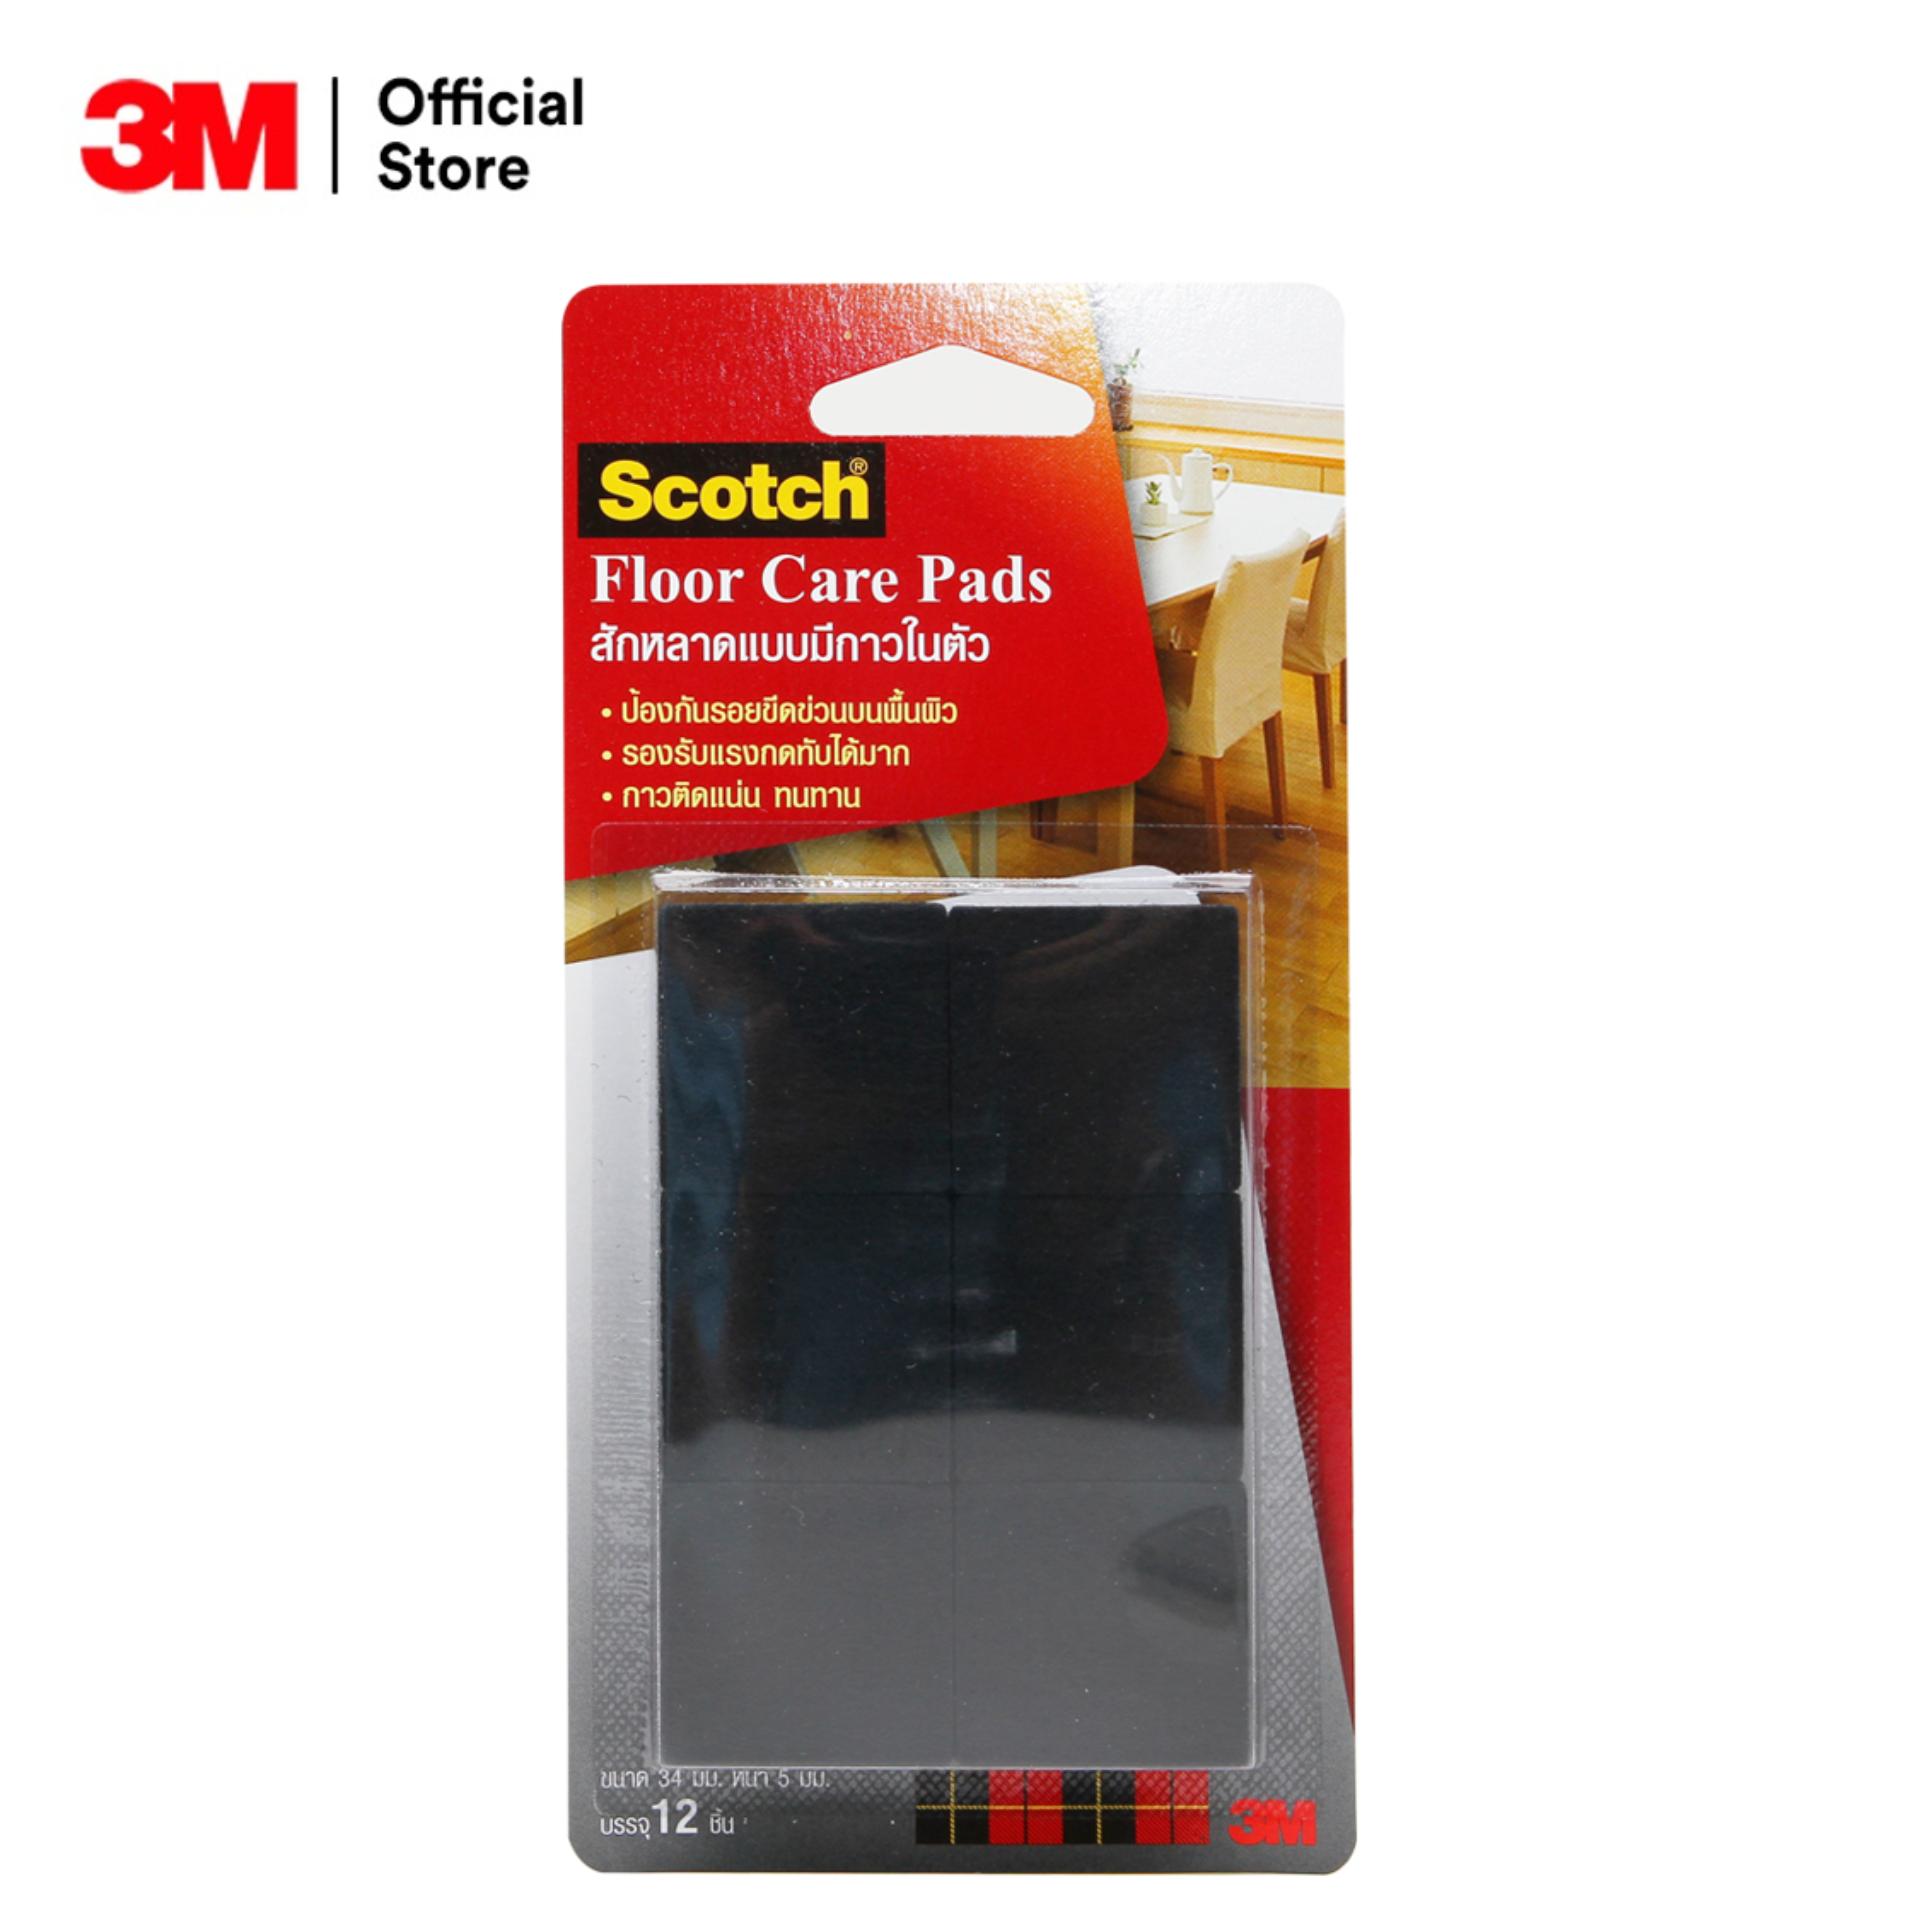 สก๊อตซ์® สักหลาดรองขาโต๊ะ แบบมีกาวในตัว ขนาด 34 มม. สีดำ (สี่เหลี่ยม) Scotch® Floor Care Square Black 34 Mm (12 Pcs/Card)(100430039)